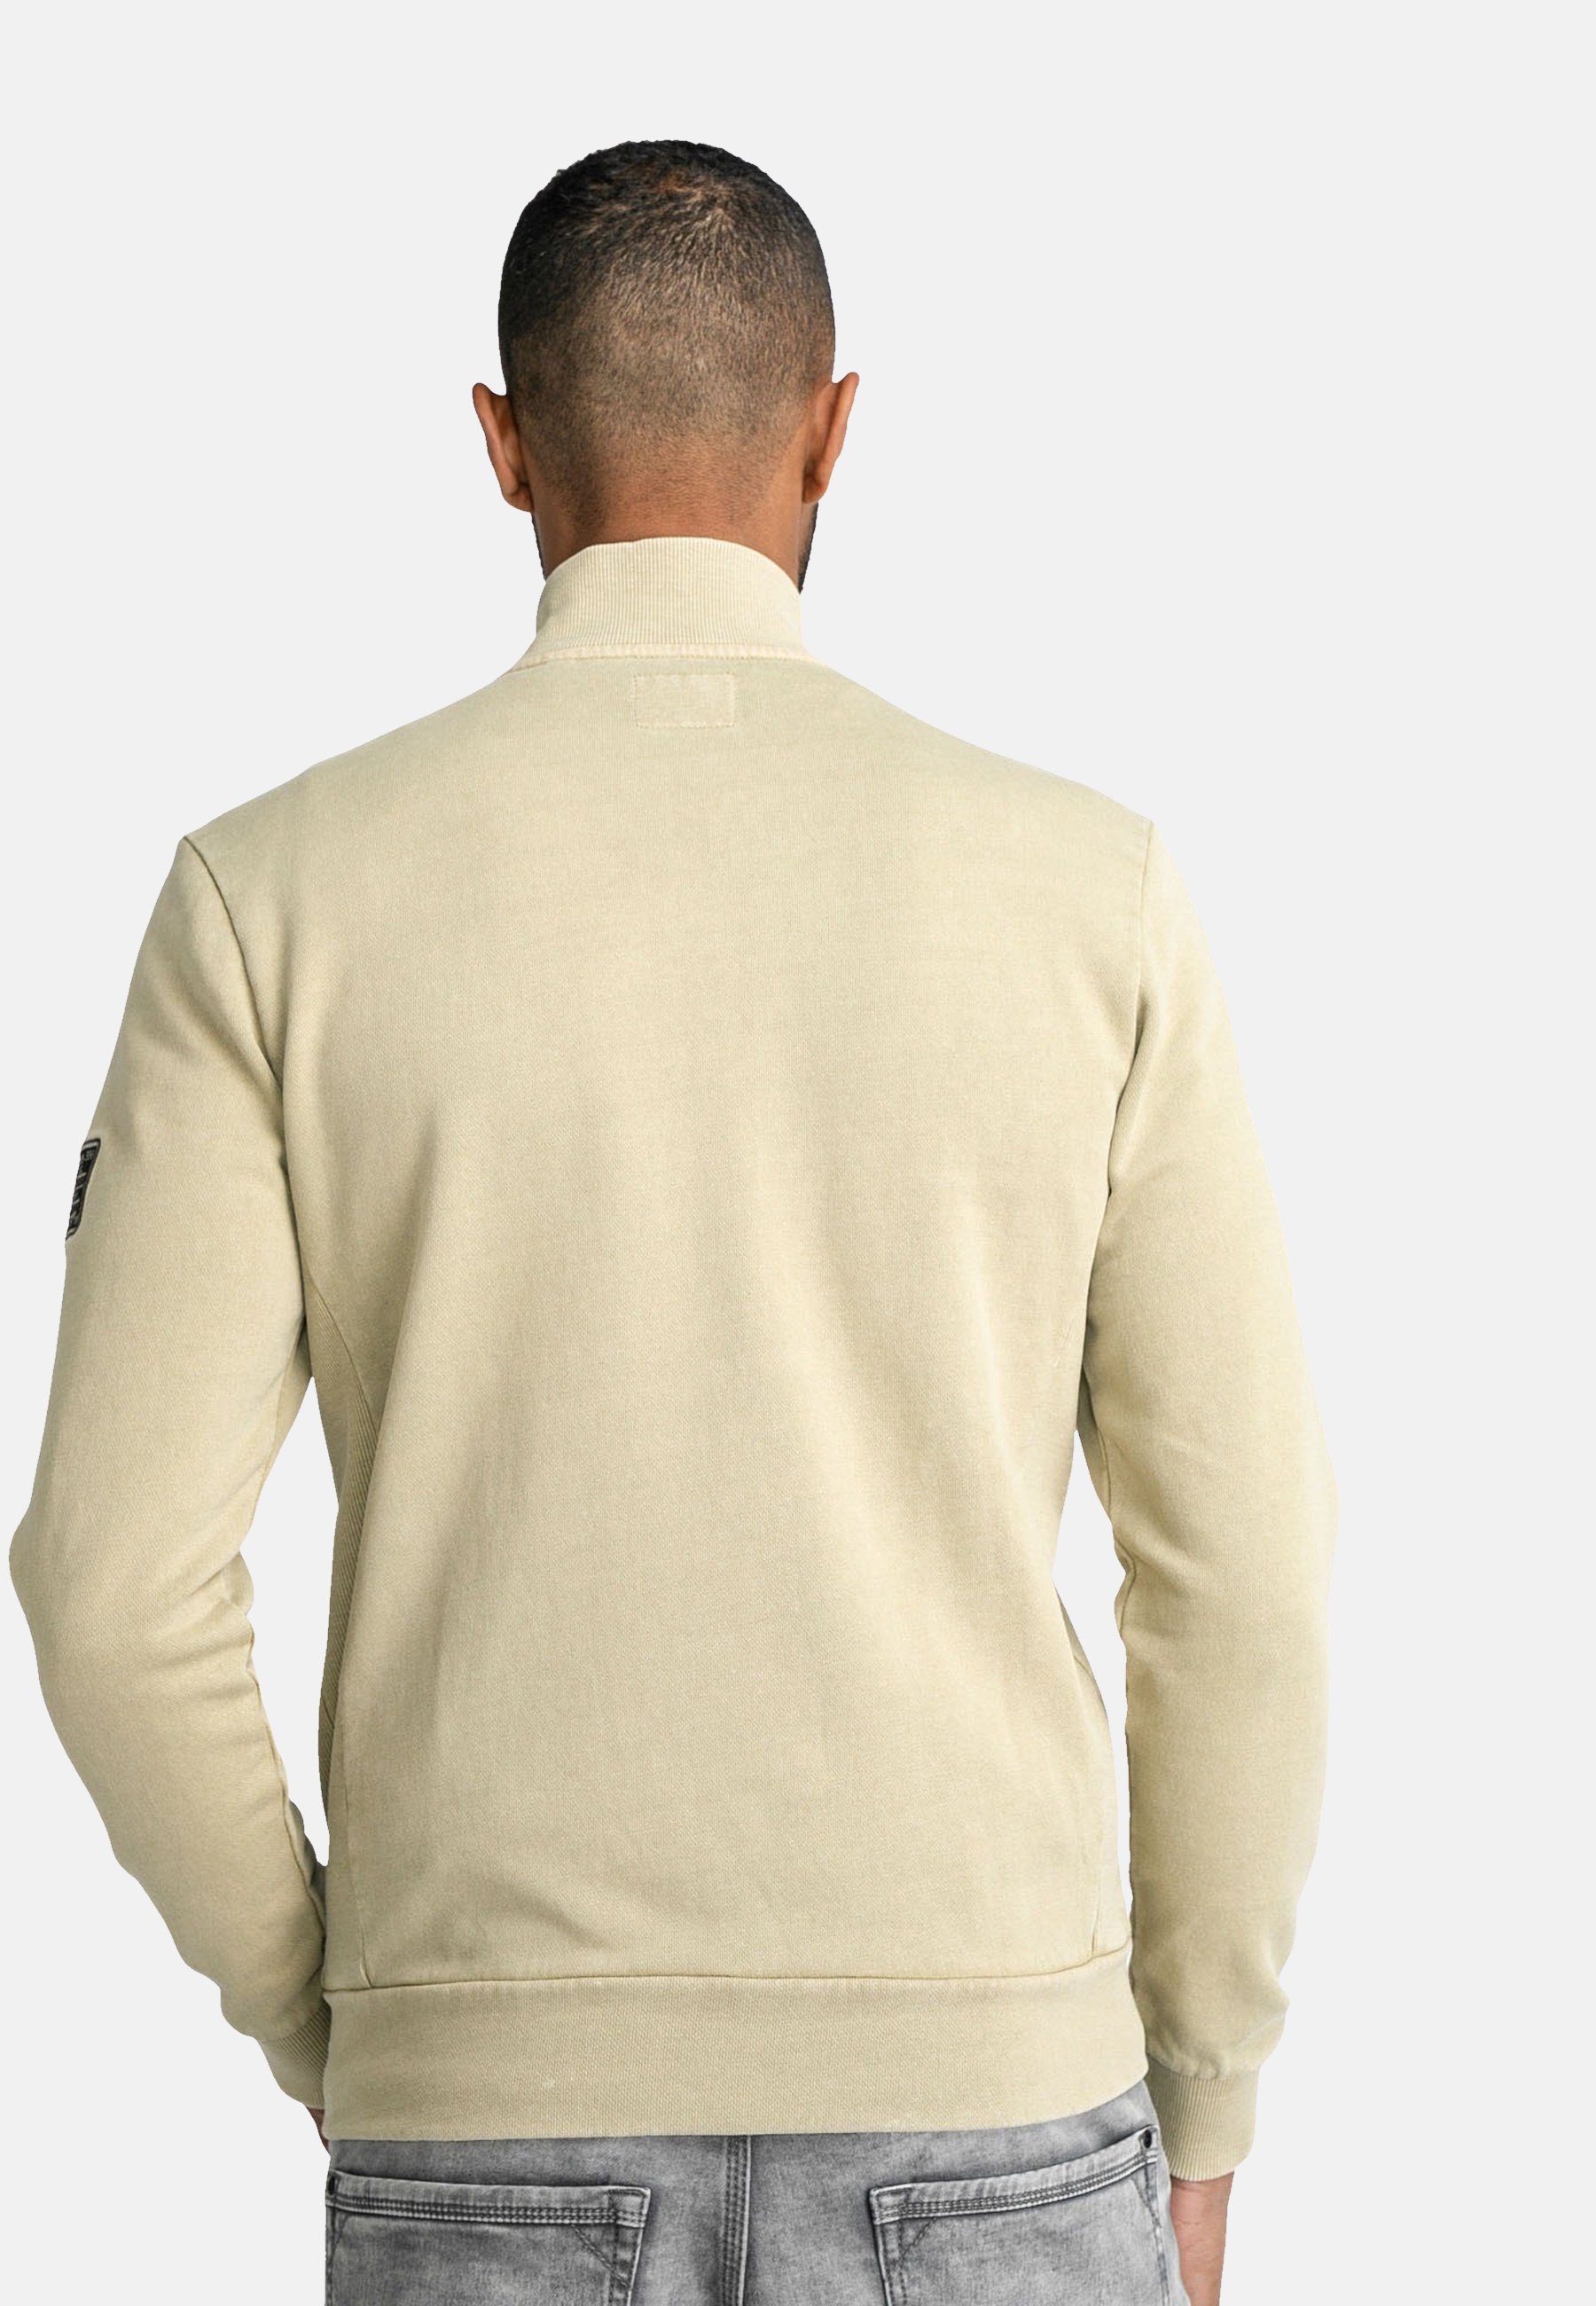 Petrol Industries Sweatjacke Sweatjacke Jacke Sweater Collar mit Reißverschluss beige